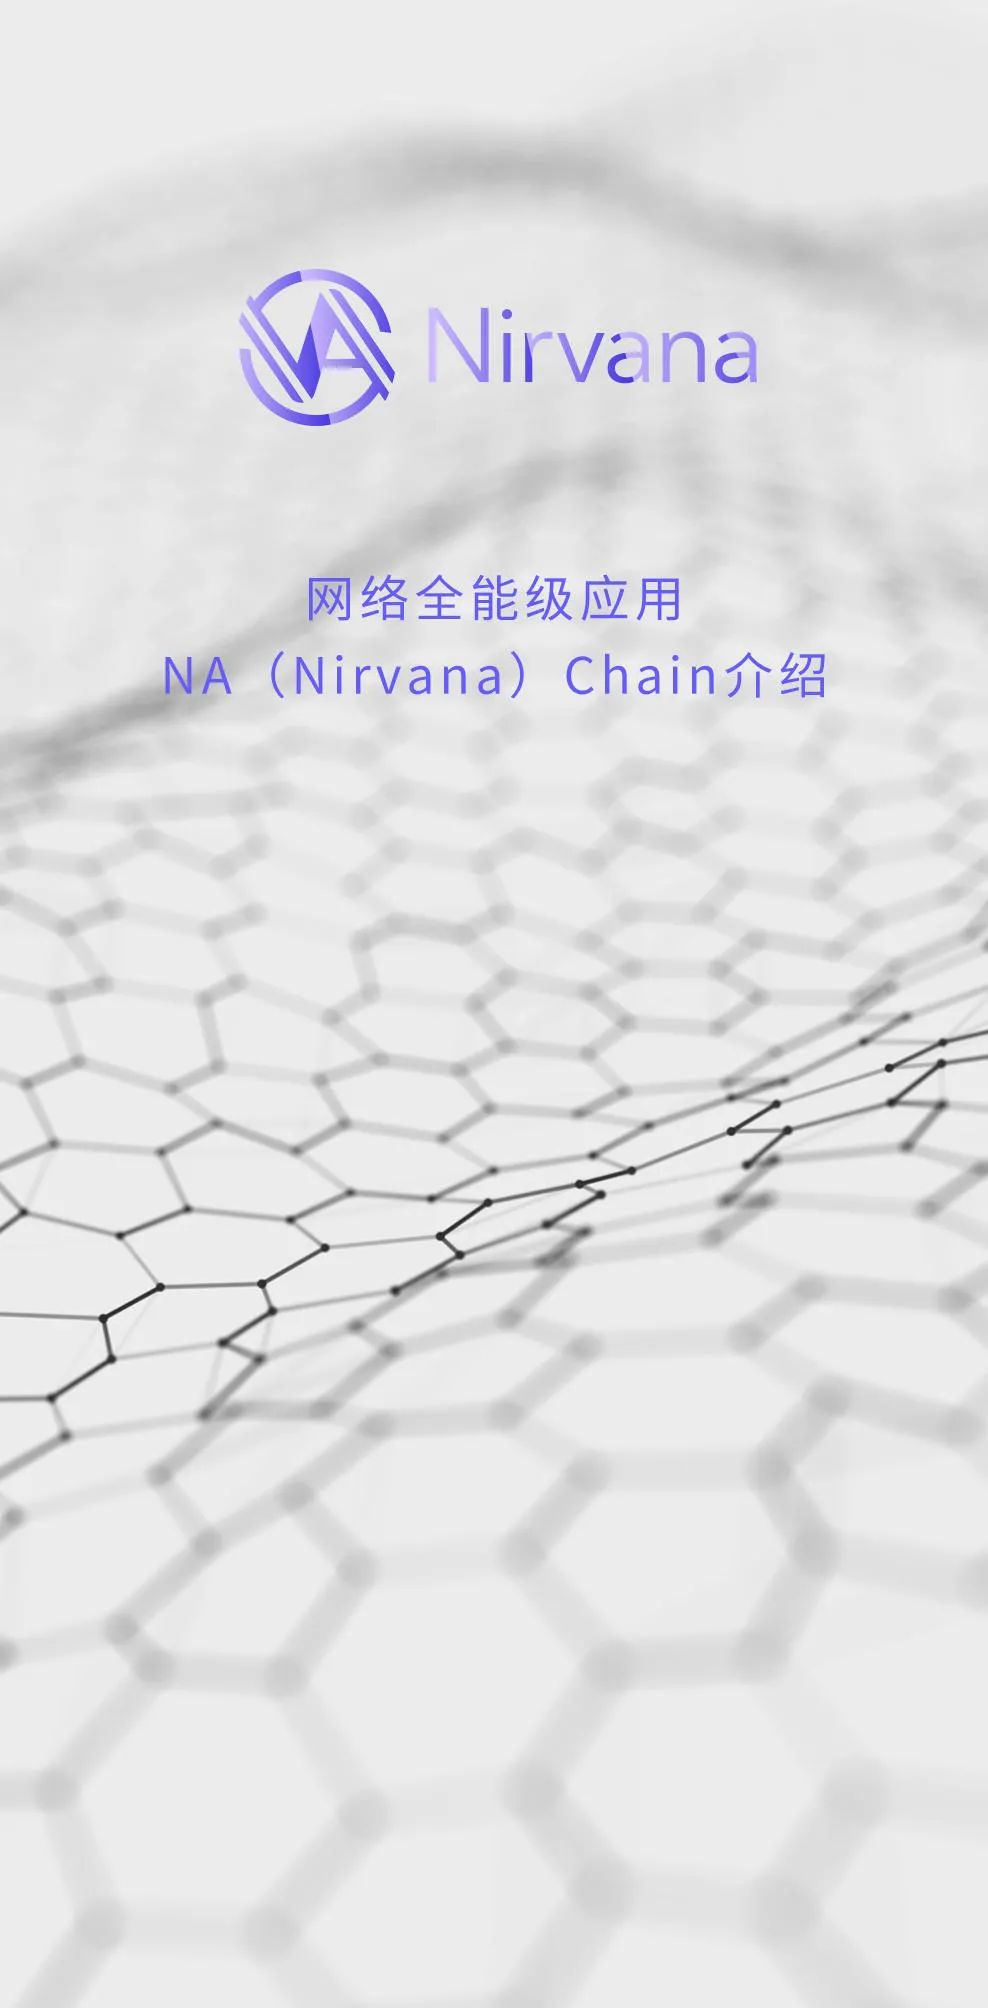 Nirvana Chain 全球介绍 | 在一篇文章中了解 NA (Nirvana) Cha